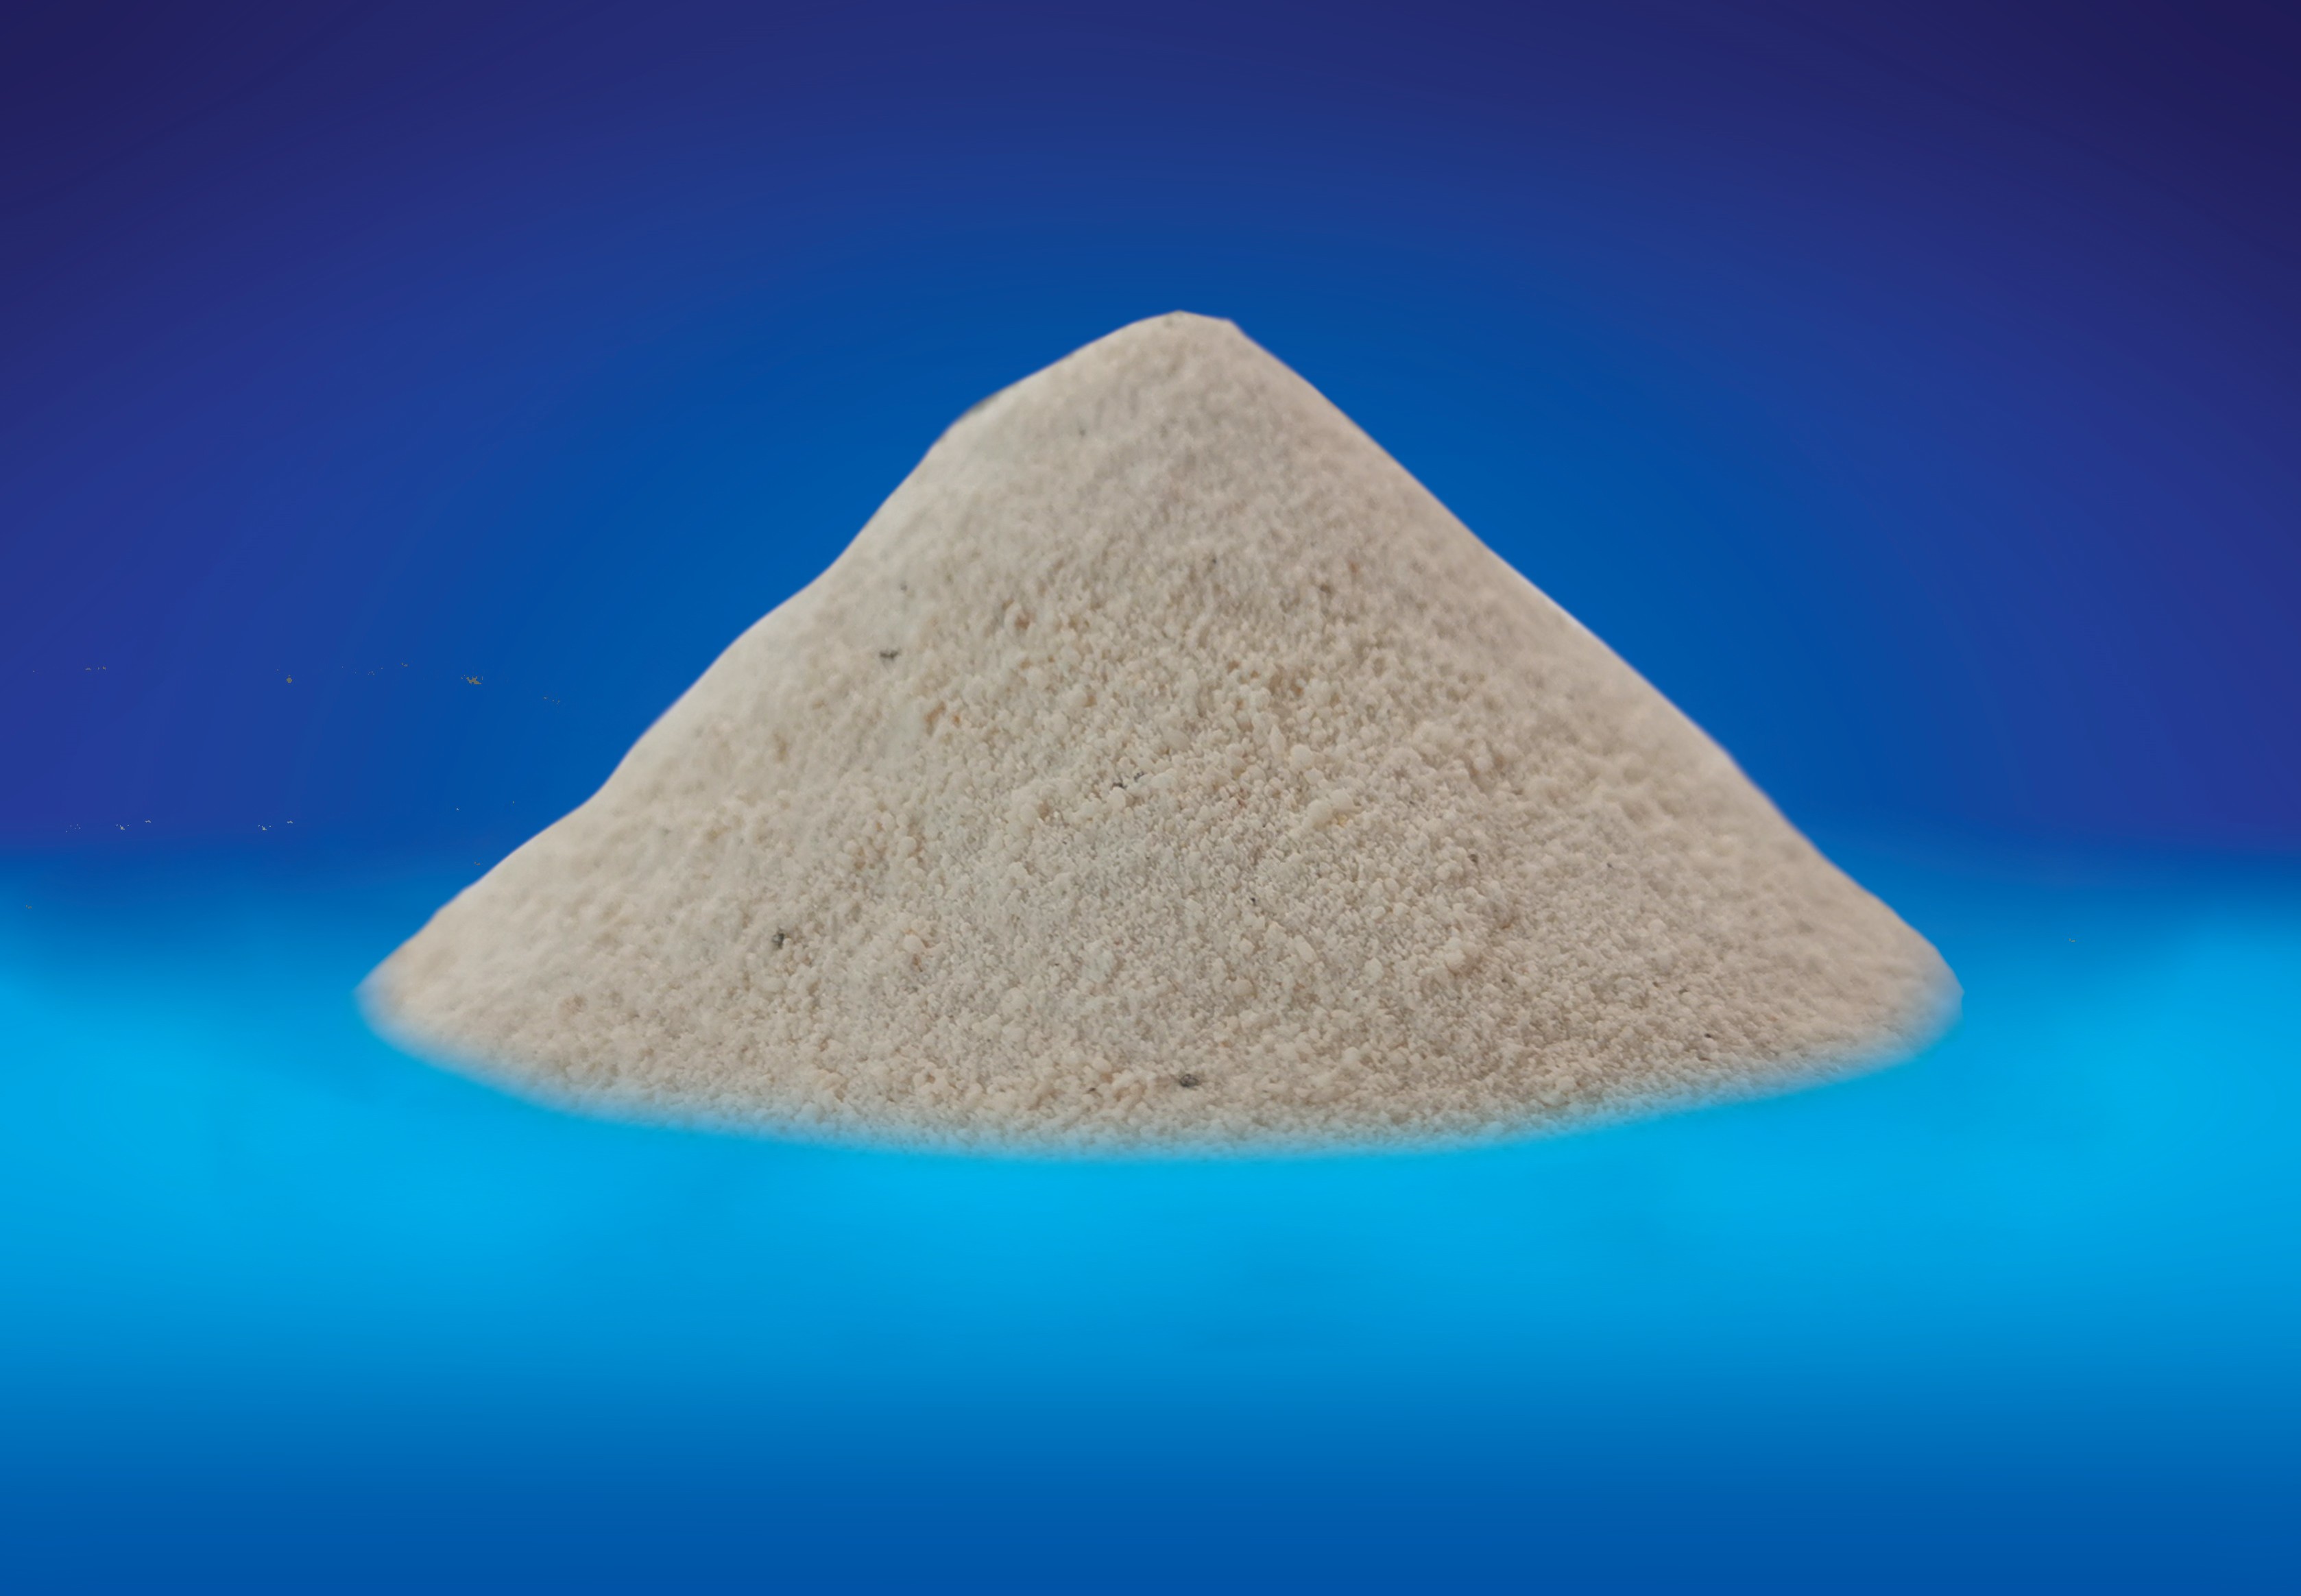 Methionine Chelate - Manganese Methionine White Powder Animal Feed Additive